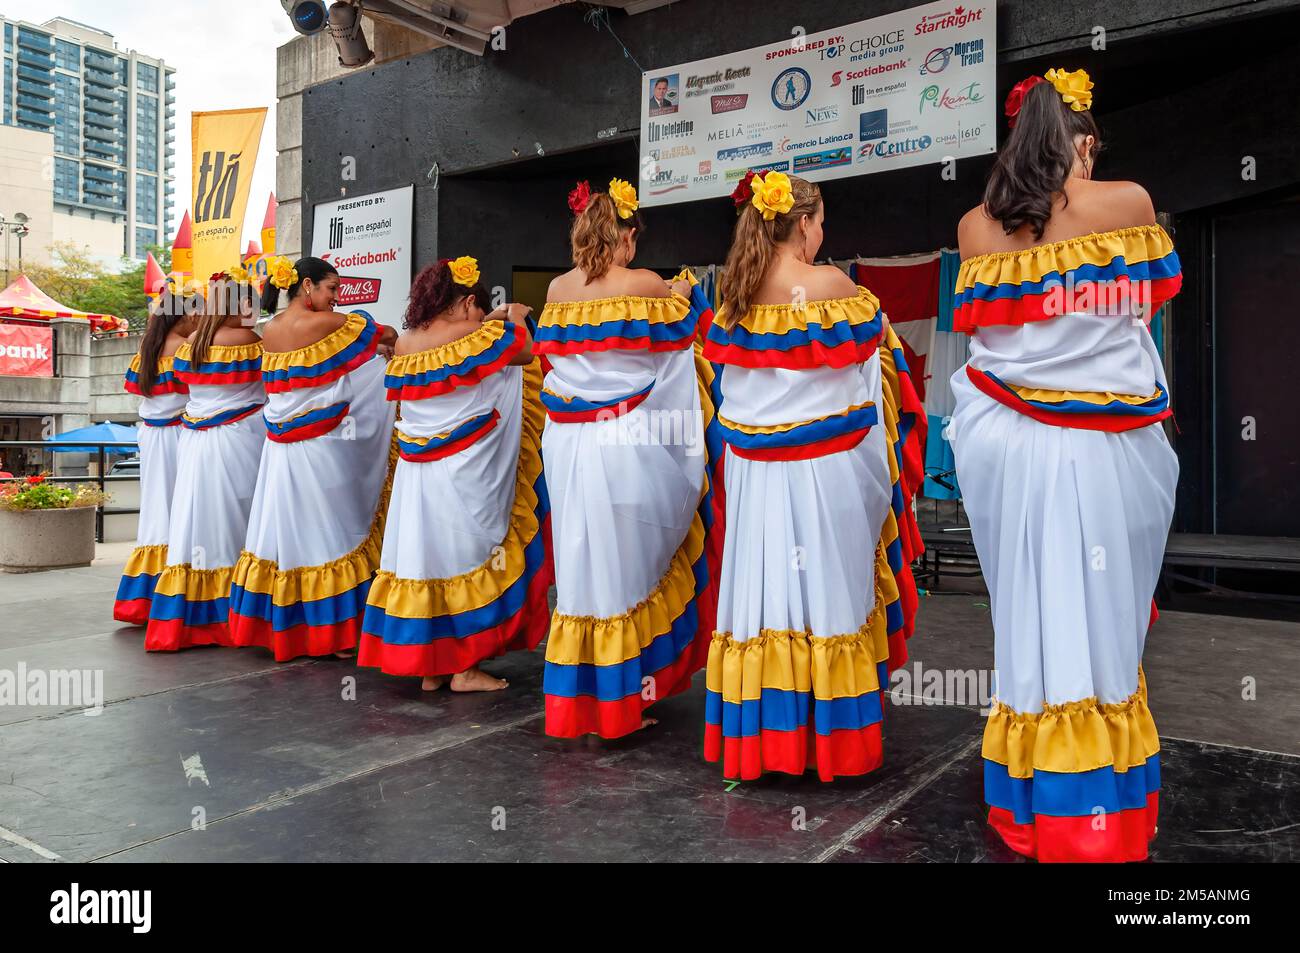 Eine Gruppe kolumbianischer Frauen, die traditionelle Kleidung tragen und auf der Bühne tanzen. Die jährliche Veranstaltung findet auf dem Mel Lastman Platz statt. Stockfoto